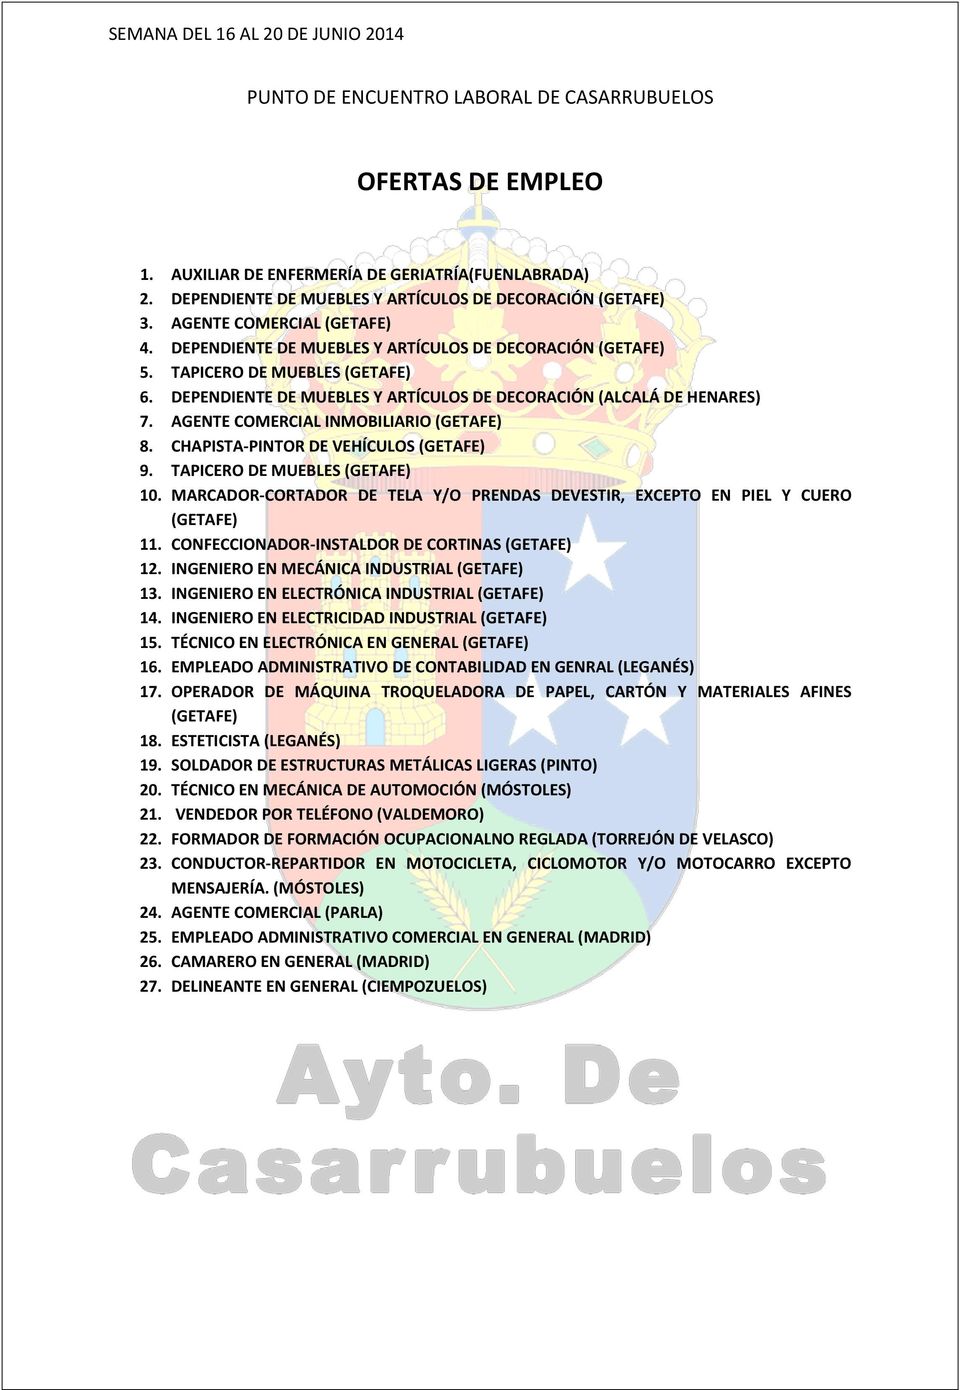 AGENTE COMERCIAL INMOBILIARIO (GETAFE) 8. CHAPISTA-PINTOR DE VEHÍCULOS (GETAFE) 9. TAPICERO DE MUEBLES (GETAFE) 10. MARCADOR-CORTADOR DE TELA Y/O PRENDAS DEVESTIR, EXCEPTO EN PIEL Y CUERO (GETAFE) 11.